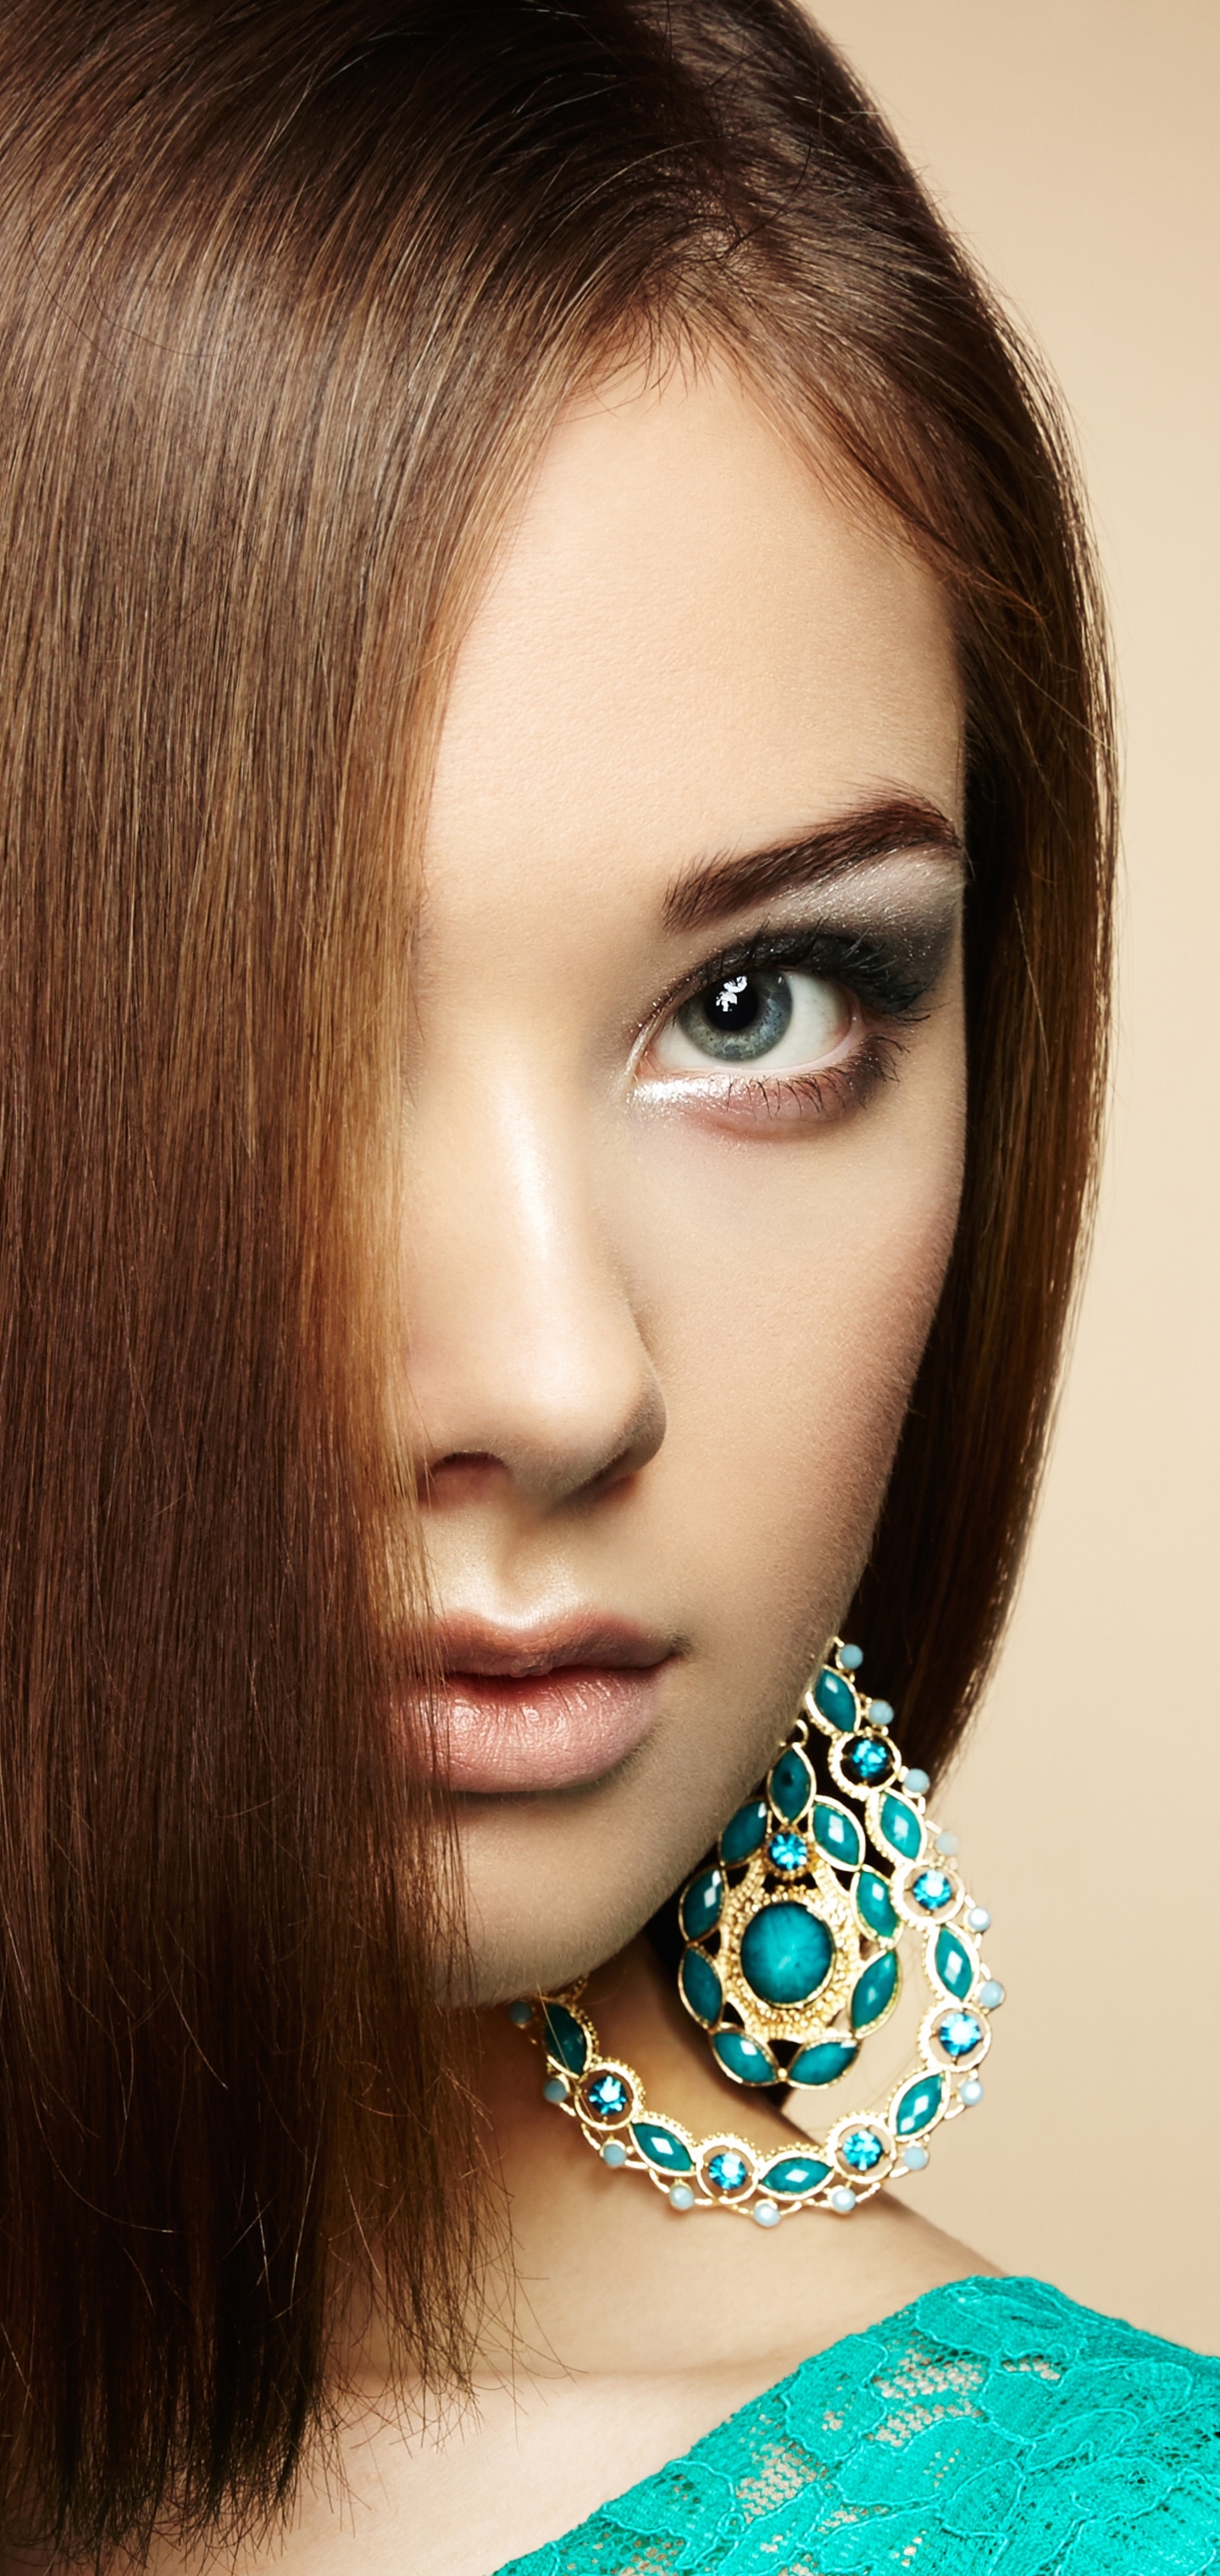 Download mobile wallpaper Hair, Face, Brunette, Model, Women, Earrings, Blue Eyes for free.